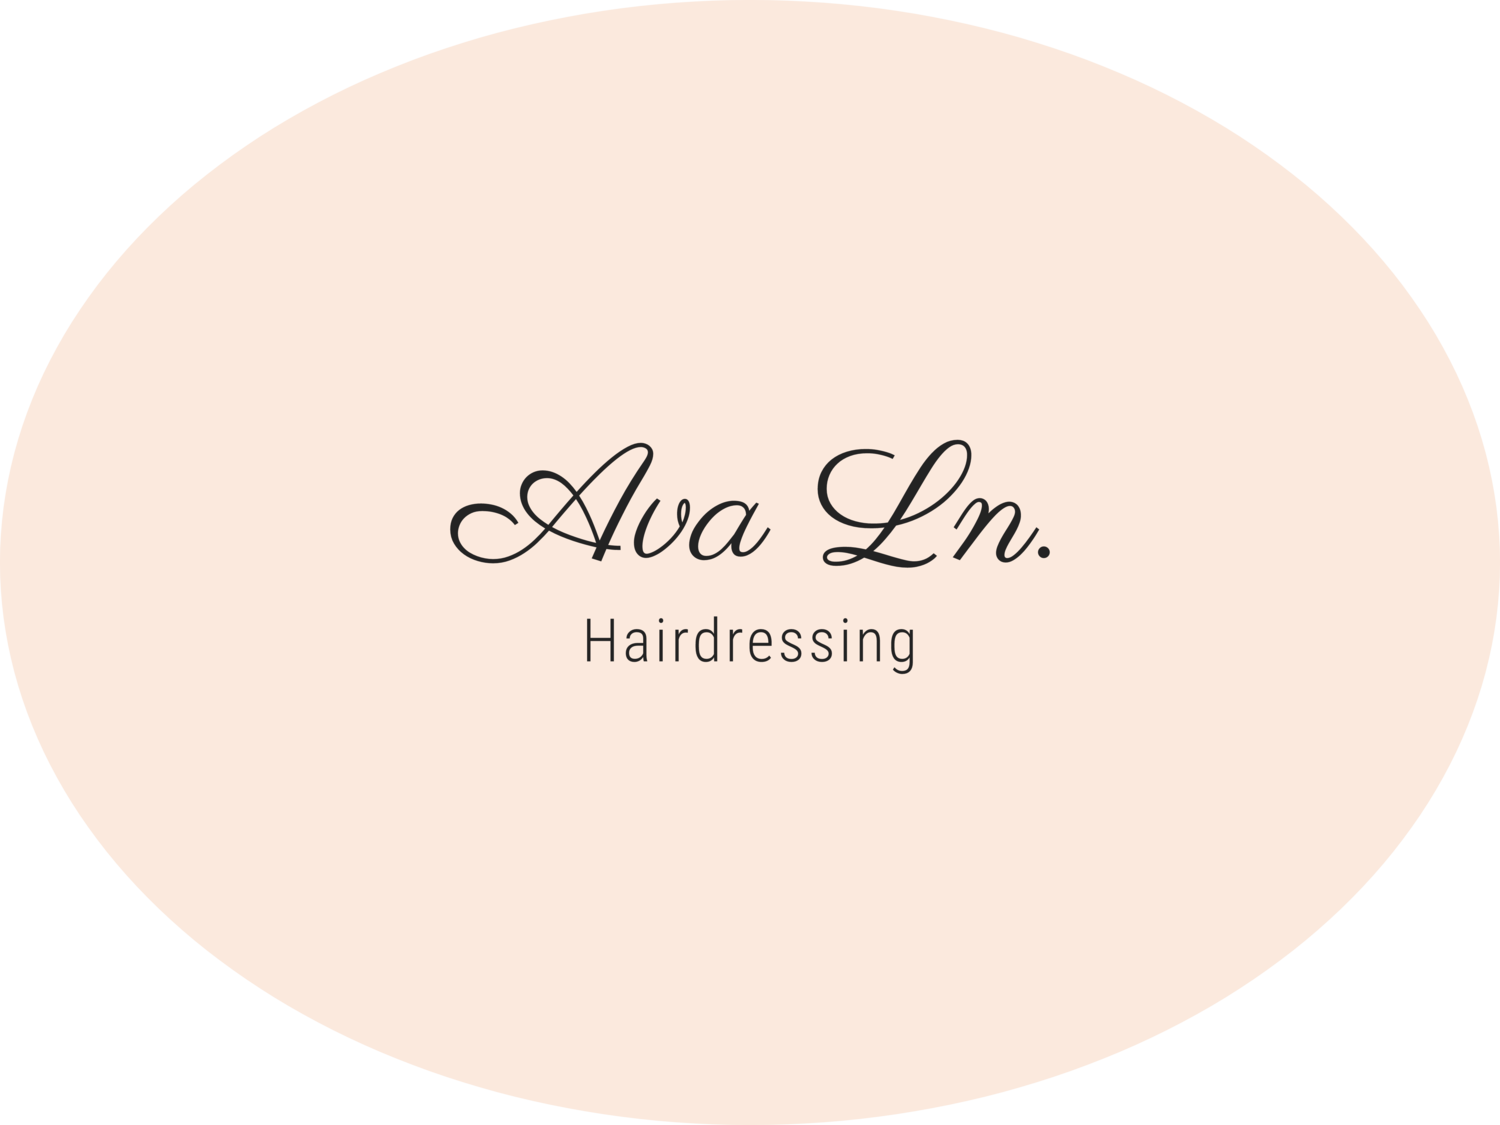 Ava Ln. Hairdressing